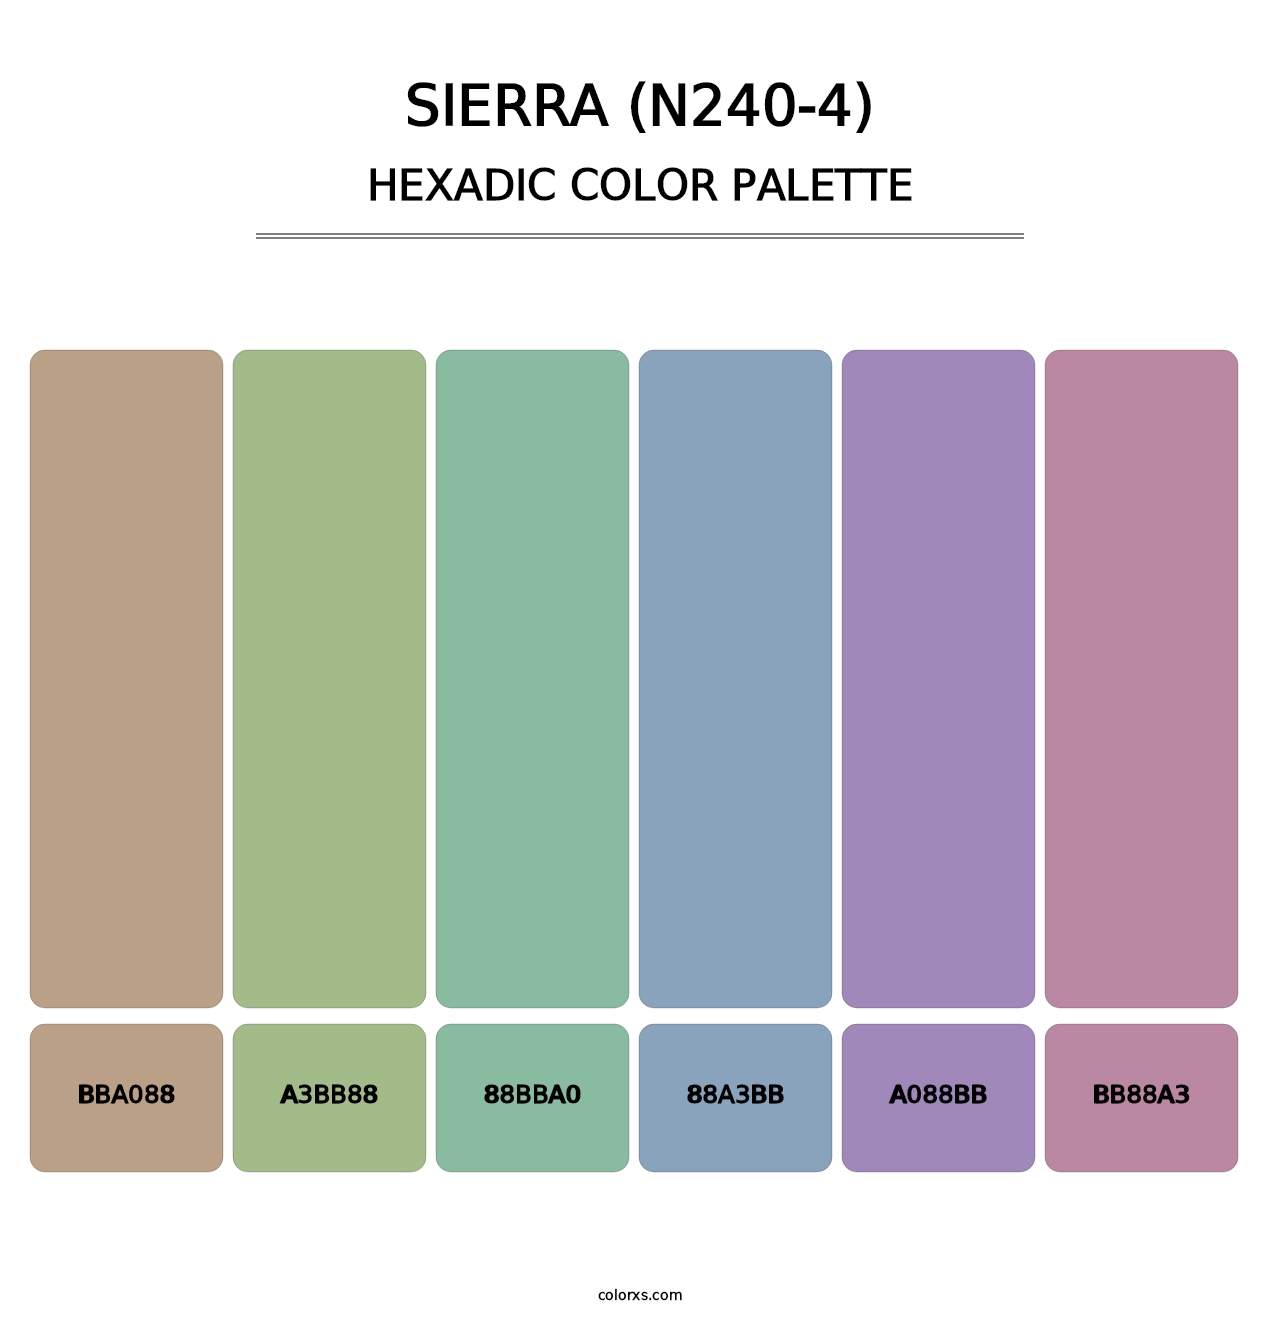 Sierra (N240-4) - Hexadic Color Palette